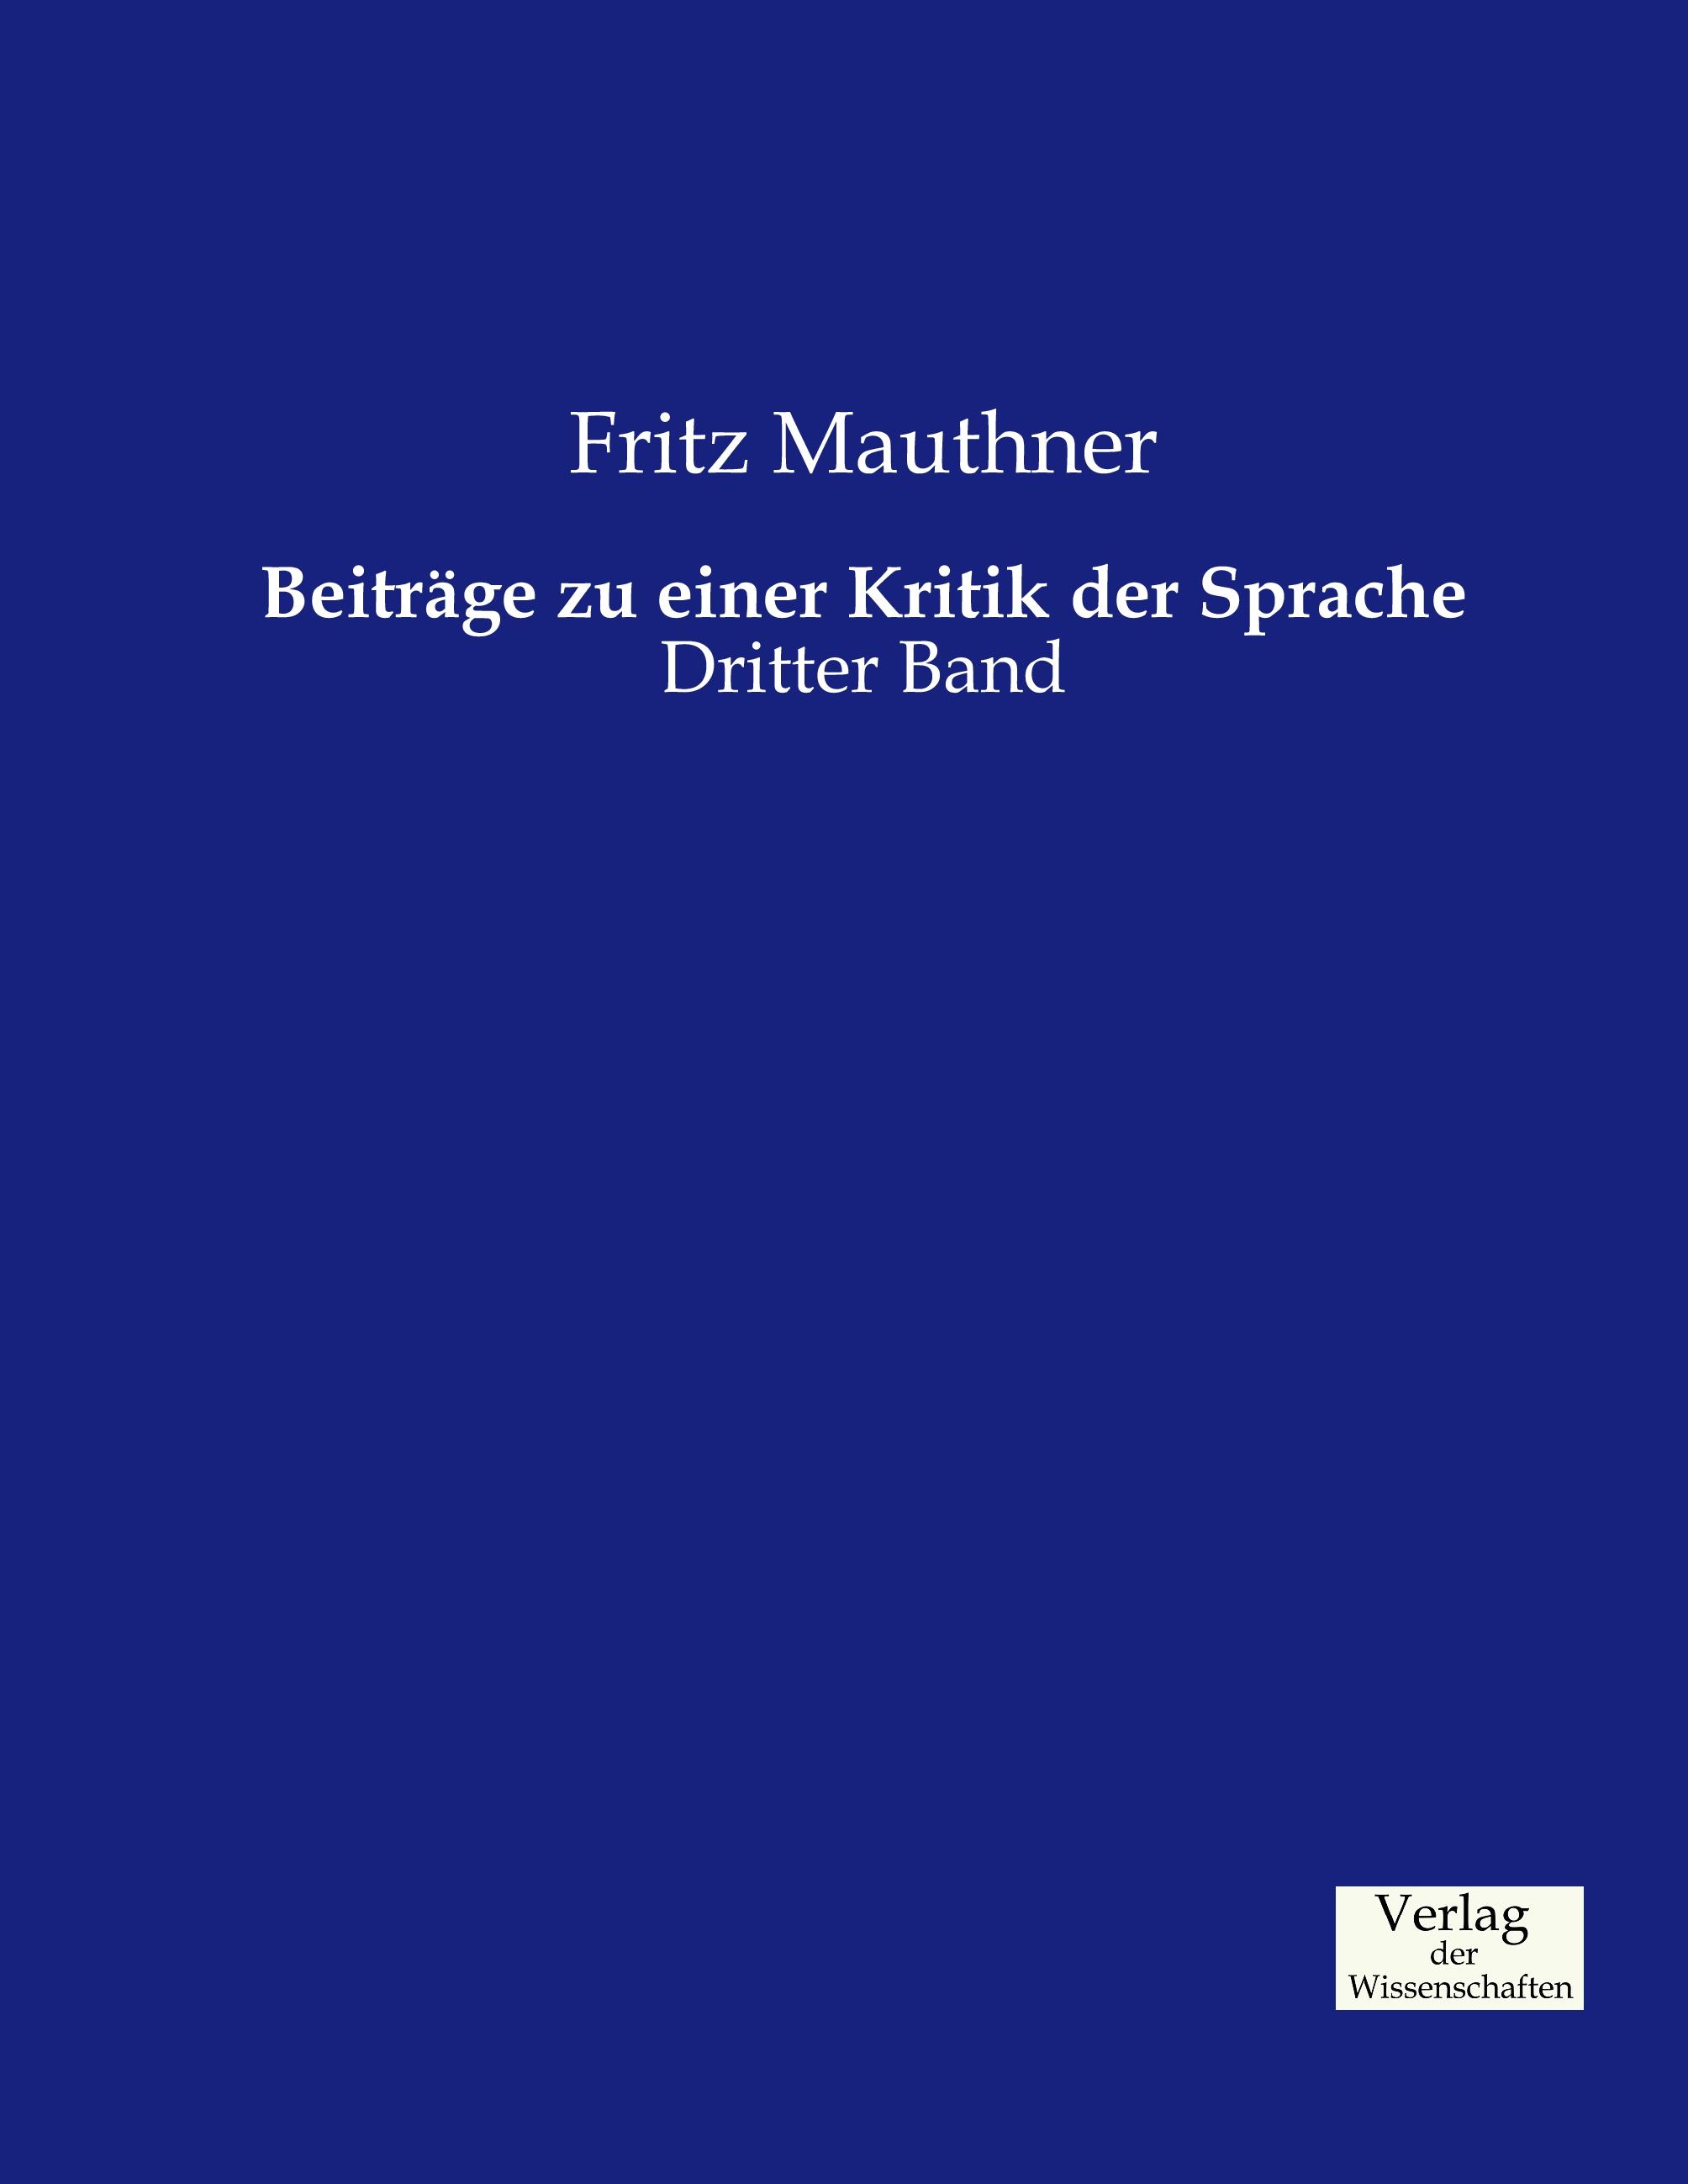 Beitraege zu einer Kritik der Sprache - Mauthner, Fritz